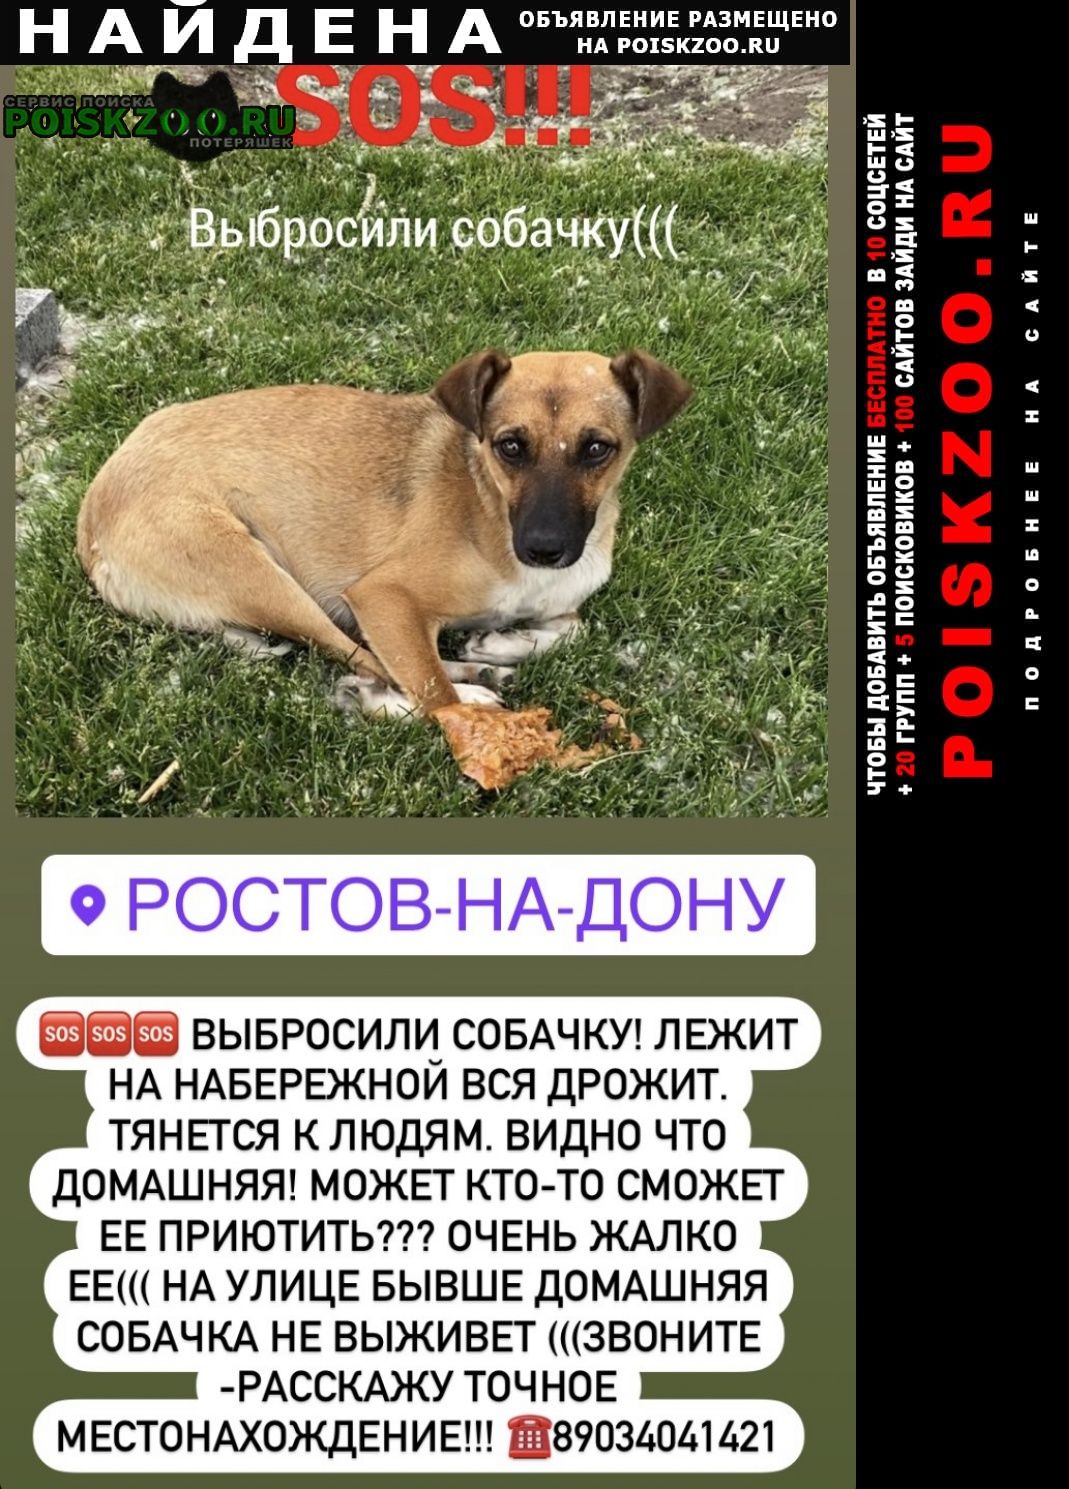 Ростов-на-Дону Найдена собака